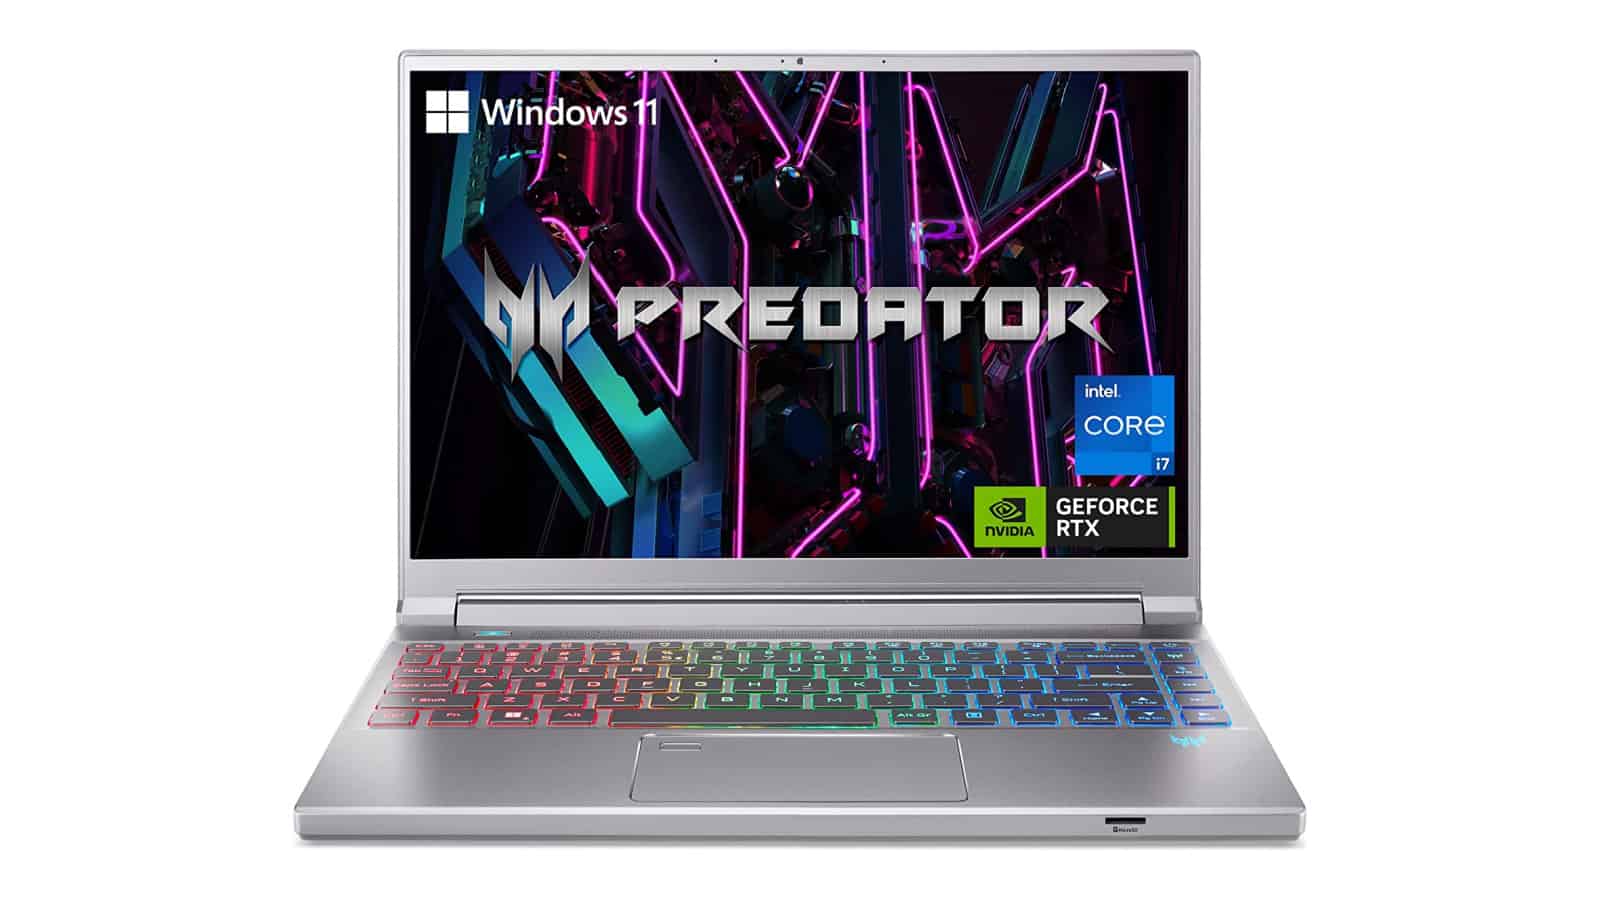 ¡Trato increíble!  Esta computadora portátil para juegos Acer tiene un precio reducido a $ 1200